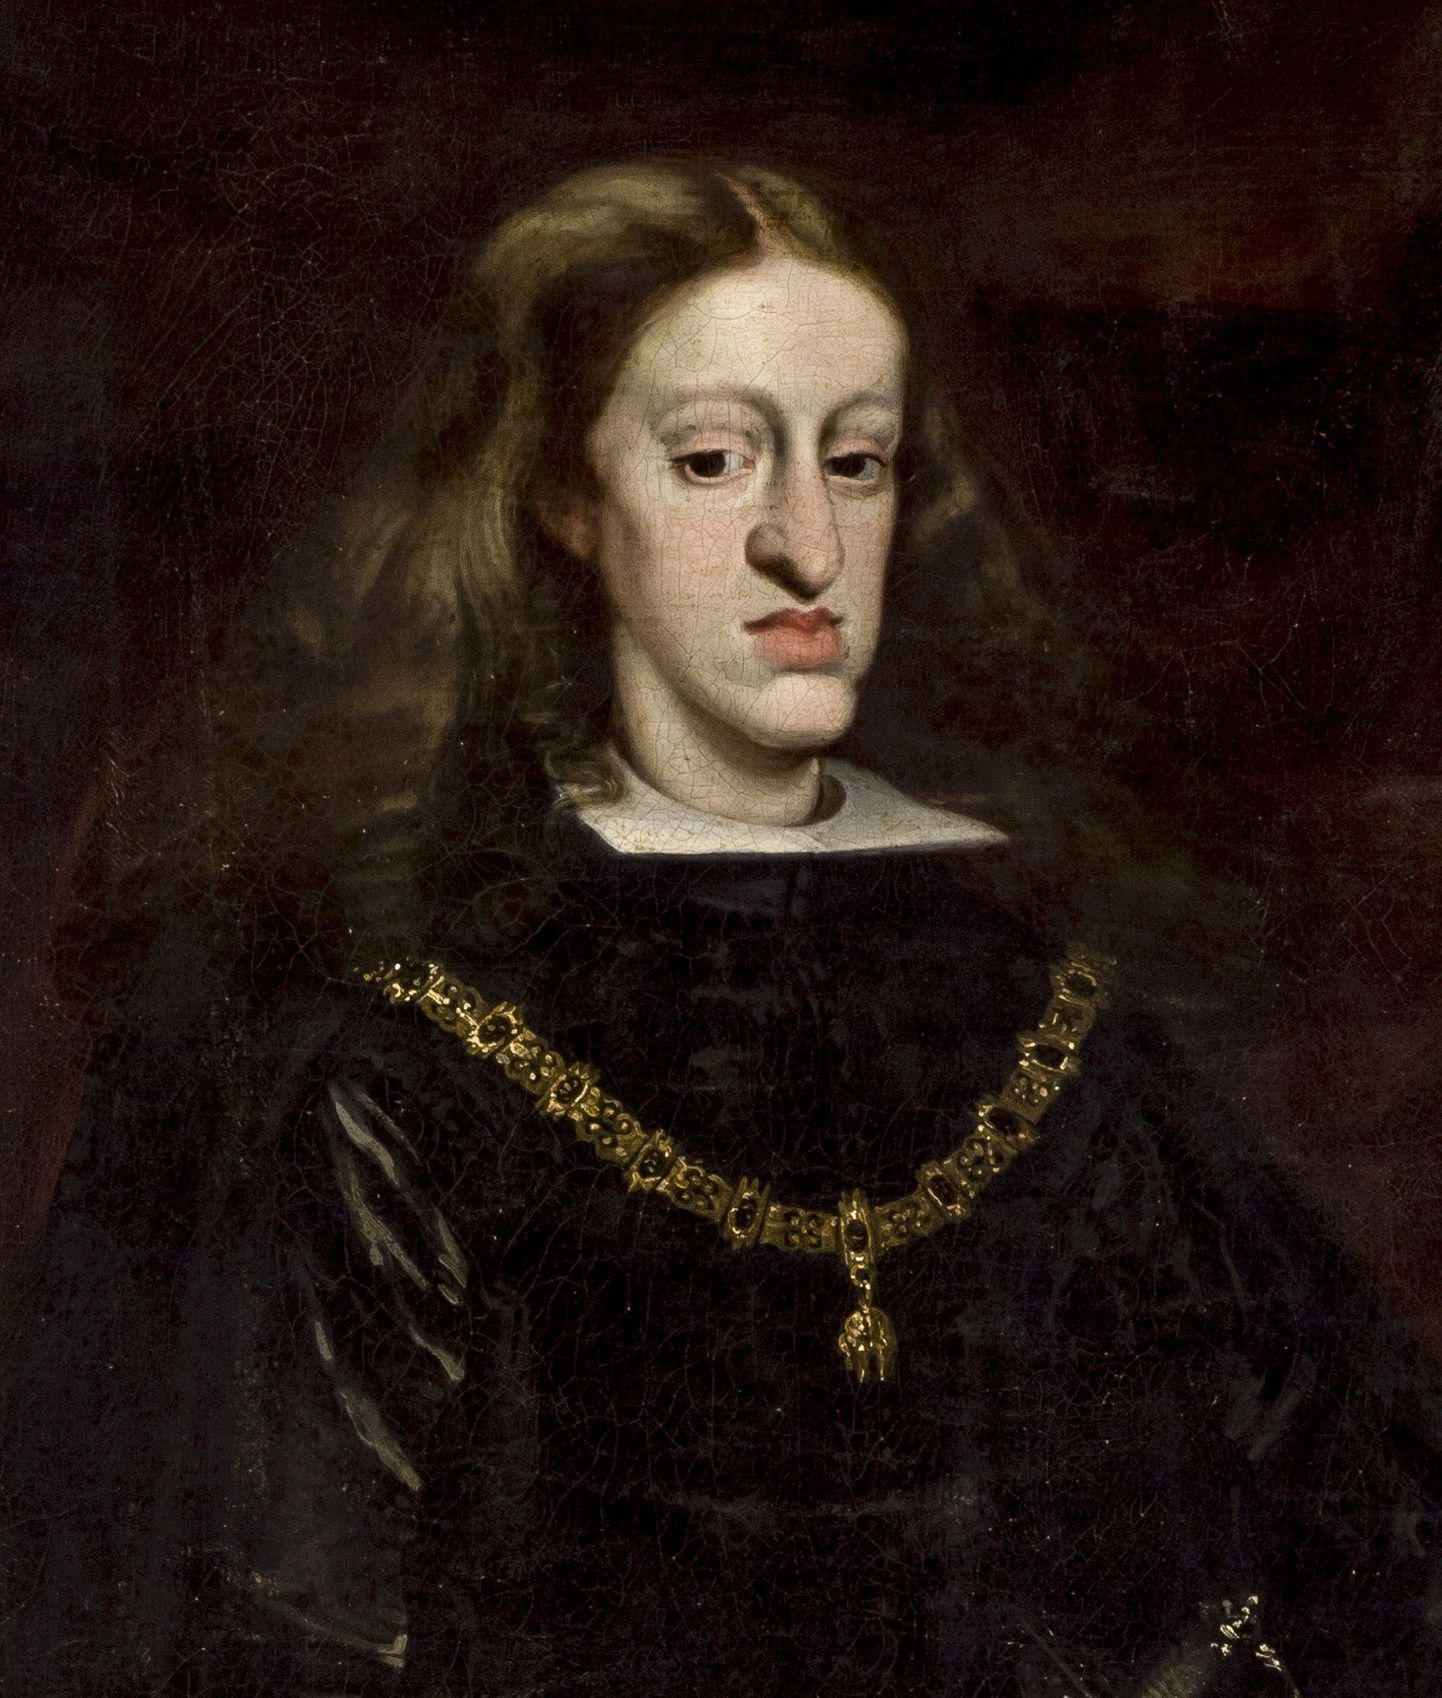 Pildil Hispaania kuningas Carlos II (1661–1700). Tegemist oli Habsburgide soost pärit monarhiga. Vanasti oli Euroopa aristokraatidel kombeks lasta järeltulijatel abielluda oma sugulastega. Austria päritolu dünastia on hea näide sellest, kui kaugele läks nõbude omavaheline sugulusristumine: koja kõikidel esindajatel oli lõpuks alahuul ette nihkunud, lisaks esines geneetilisi haigusi, näiteks Carlos II oli sigimisvõimetu, jäädes seega Habsburgide Hispaania liini viimaseks esindajaks.